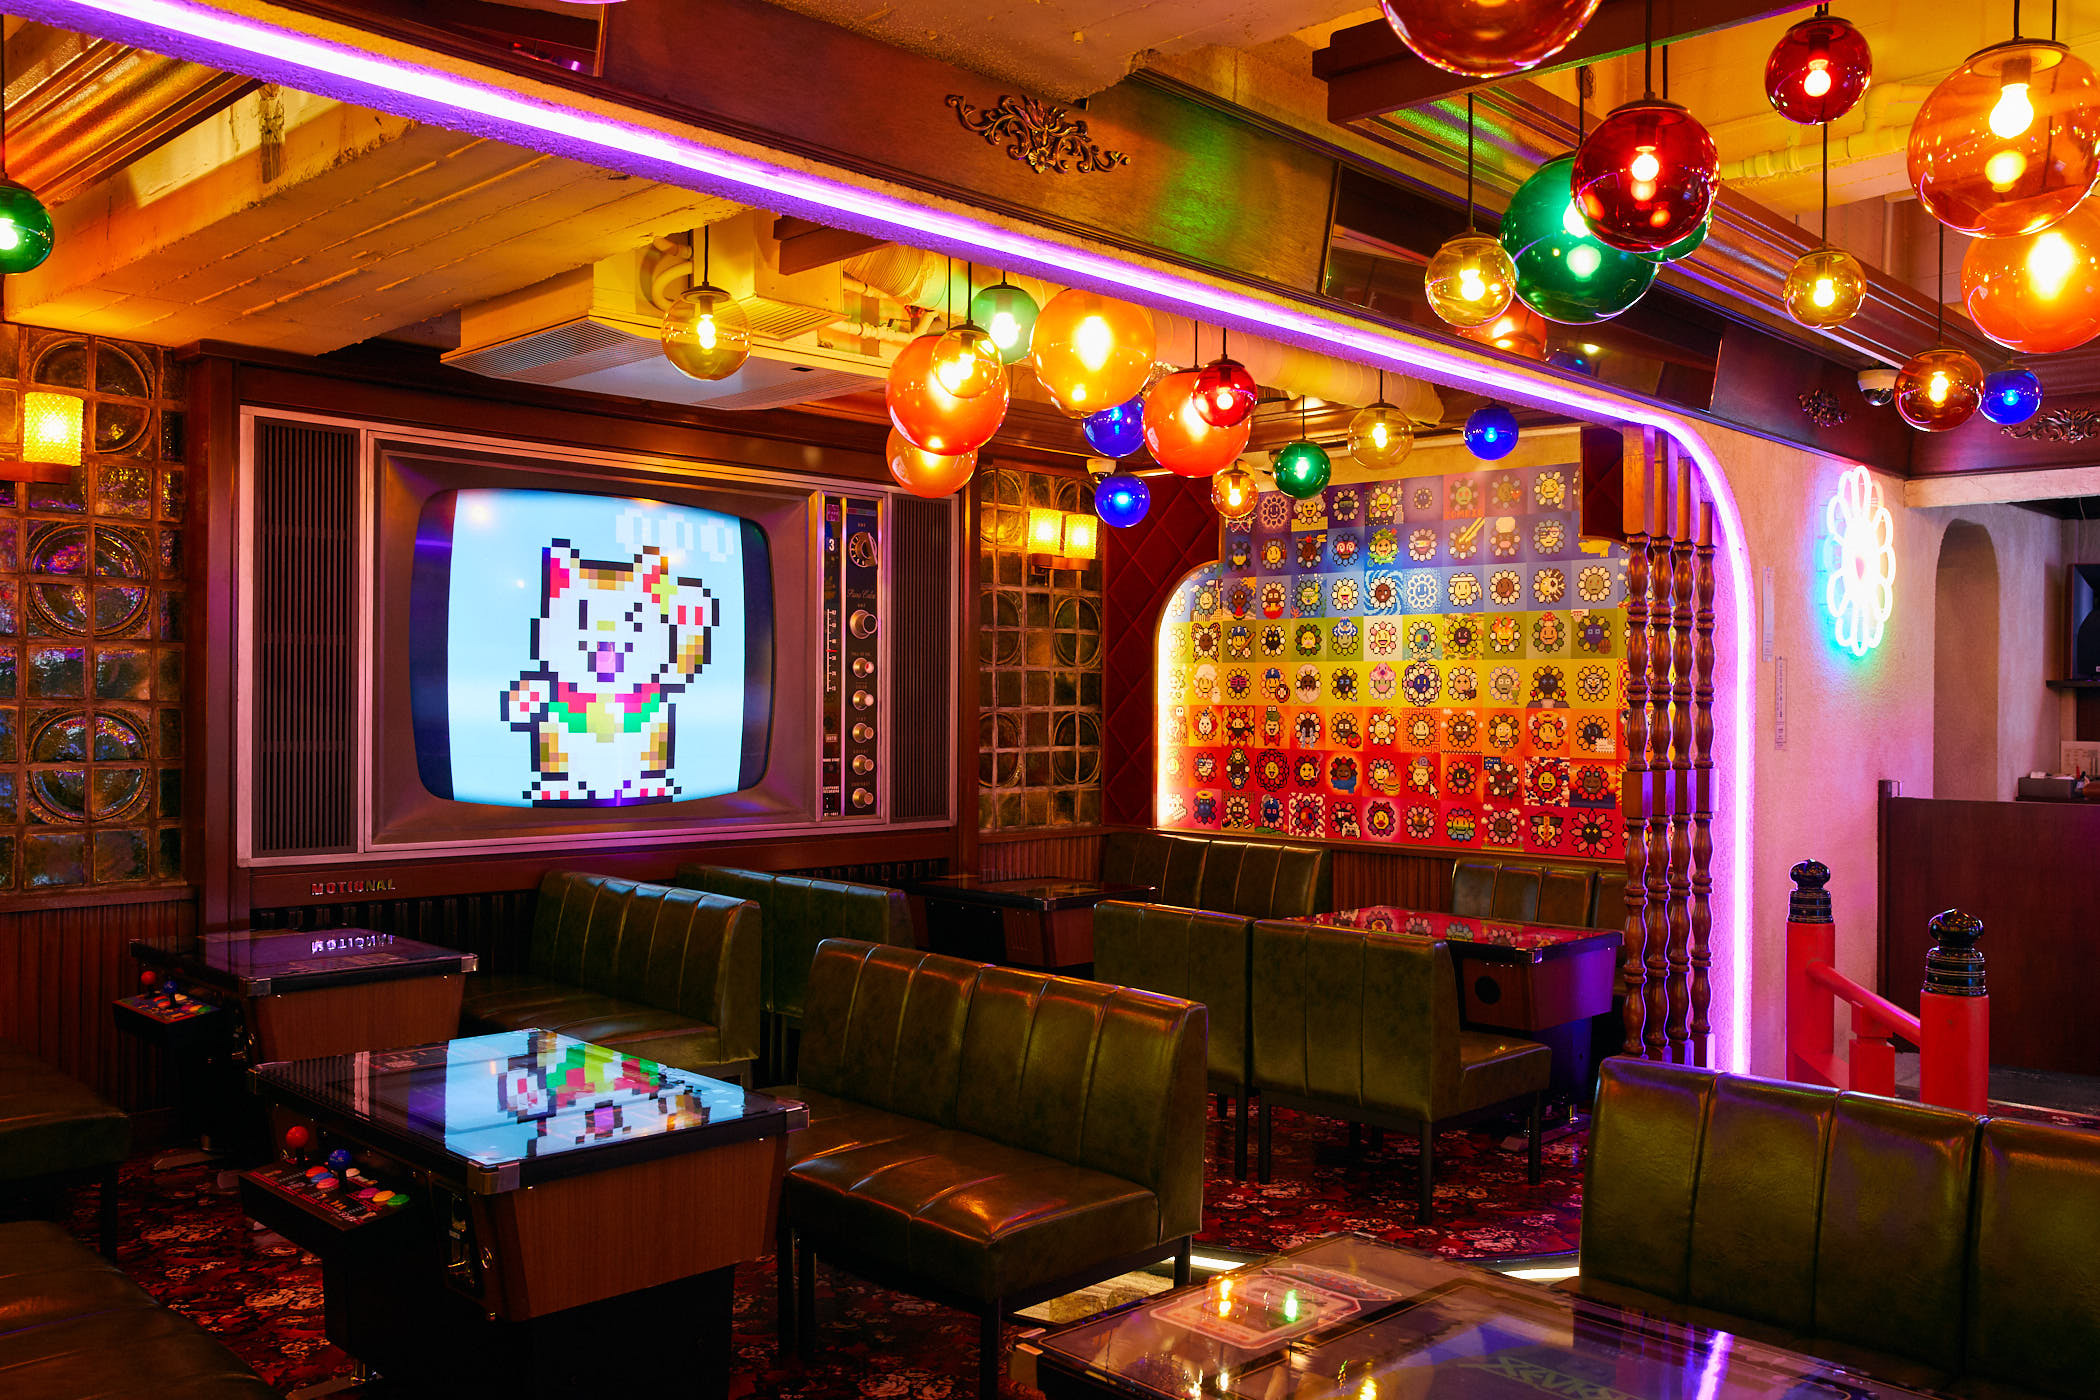 4 Wonderful Karaoke Spots in Tokyo that are Far from Normal